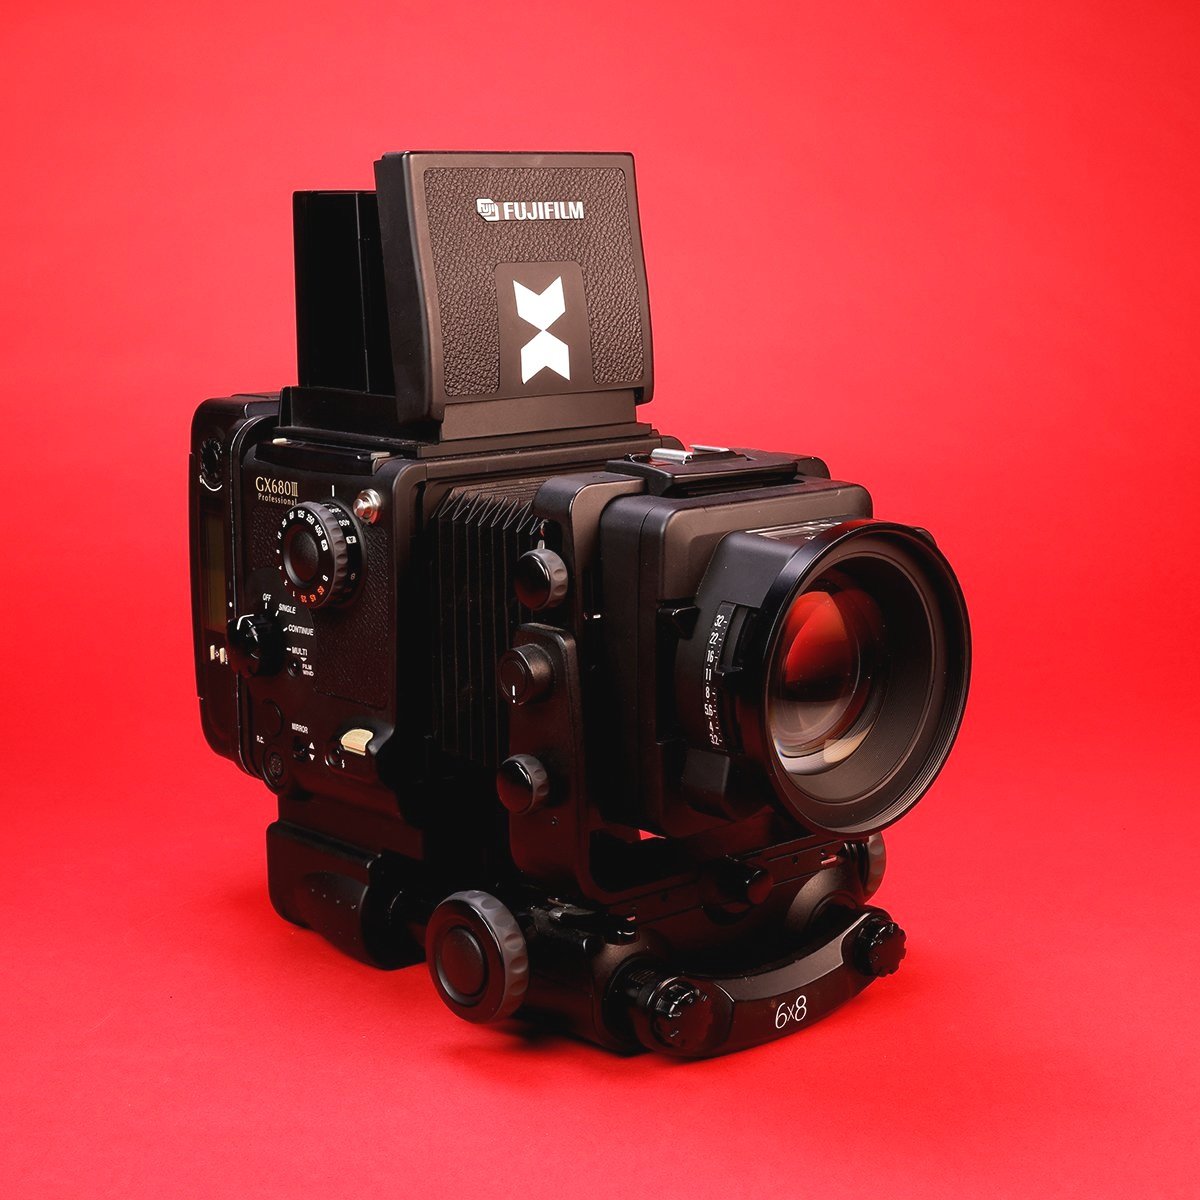 Medium Format Film Camera & Lens Rentals | Toronto | Album Equipment